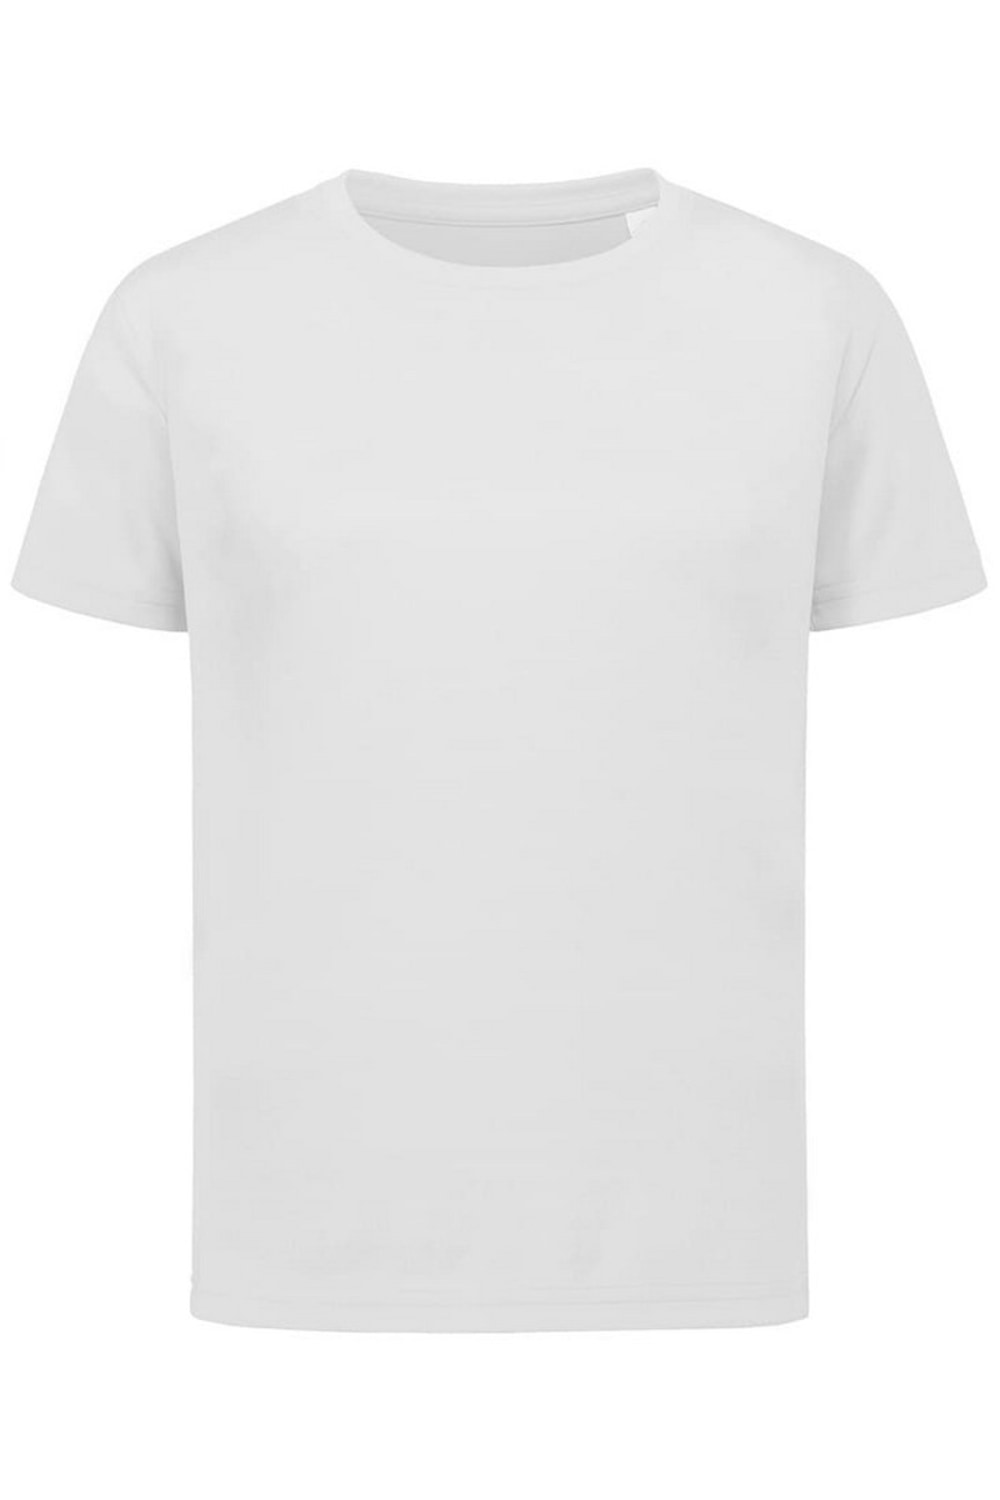 Stedman Childrens/Kids Sports Active T-Shirt (White)